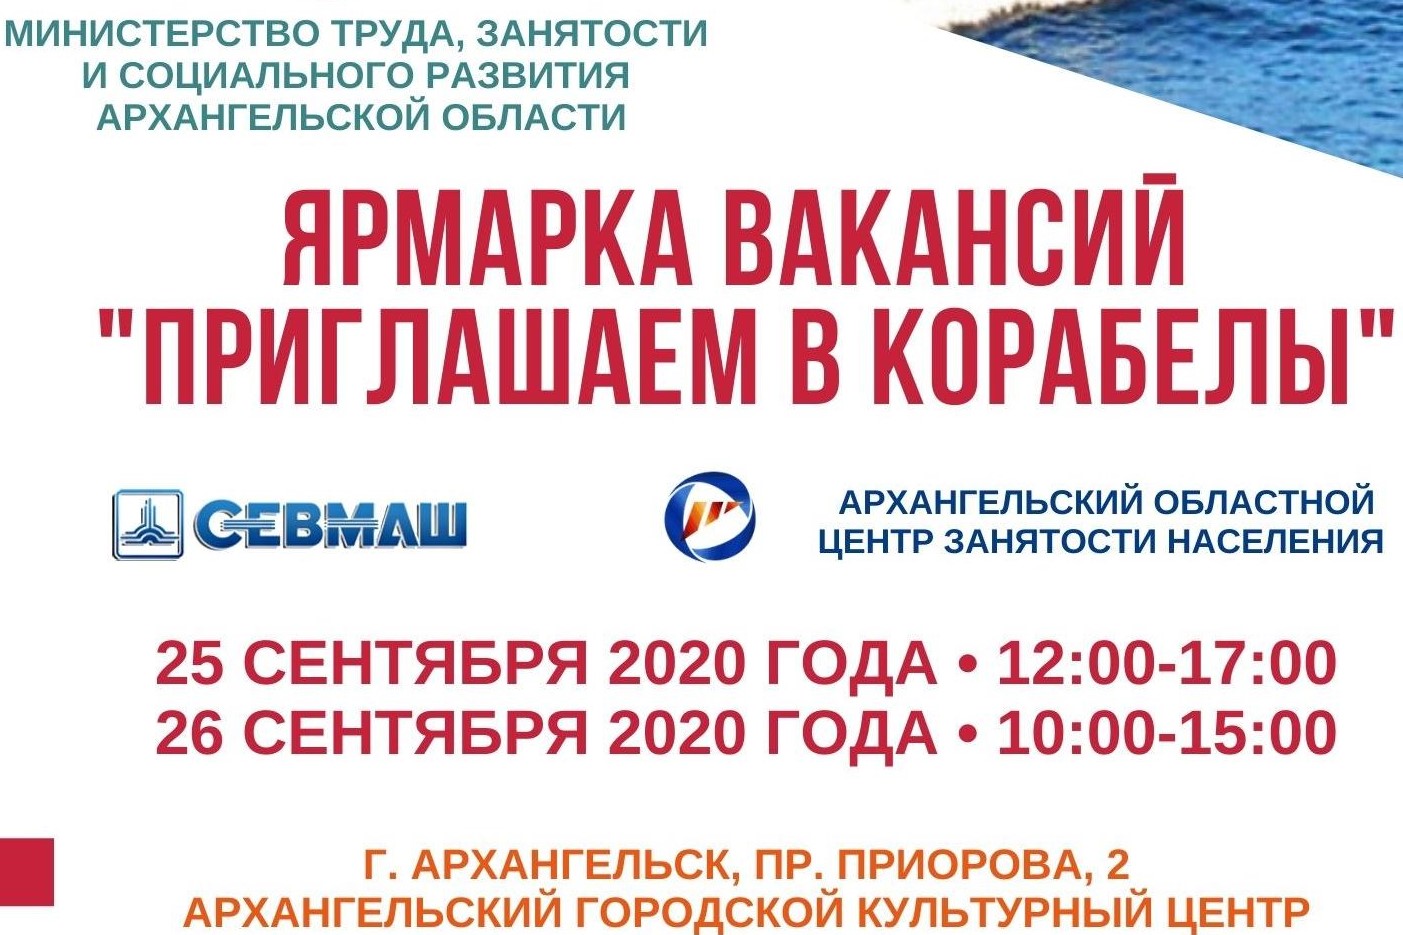 Ярмарка вакансий «Приглашаем в корабелы» пройдет в Архангельске 25-26 сентября